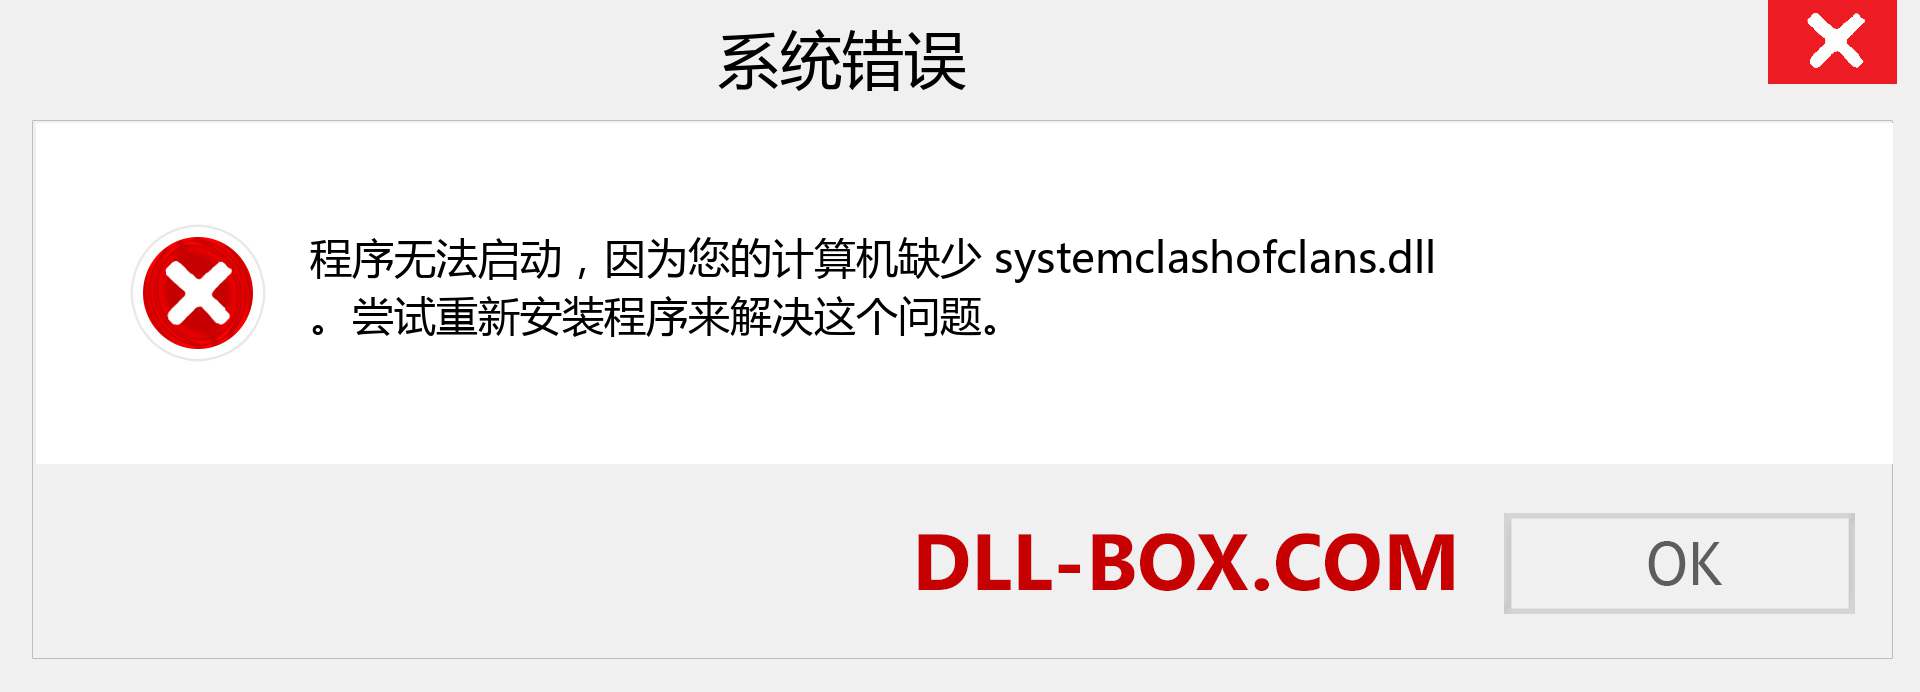 systemclashofclans.dll 文件丢失？。 适用于 Windows 7、8、10 的下载 - 修复 Windows、照片、图像上的 systemclashofclans dll 丢失错误